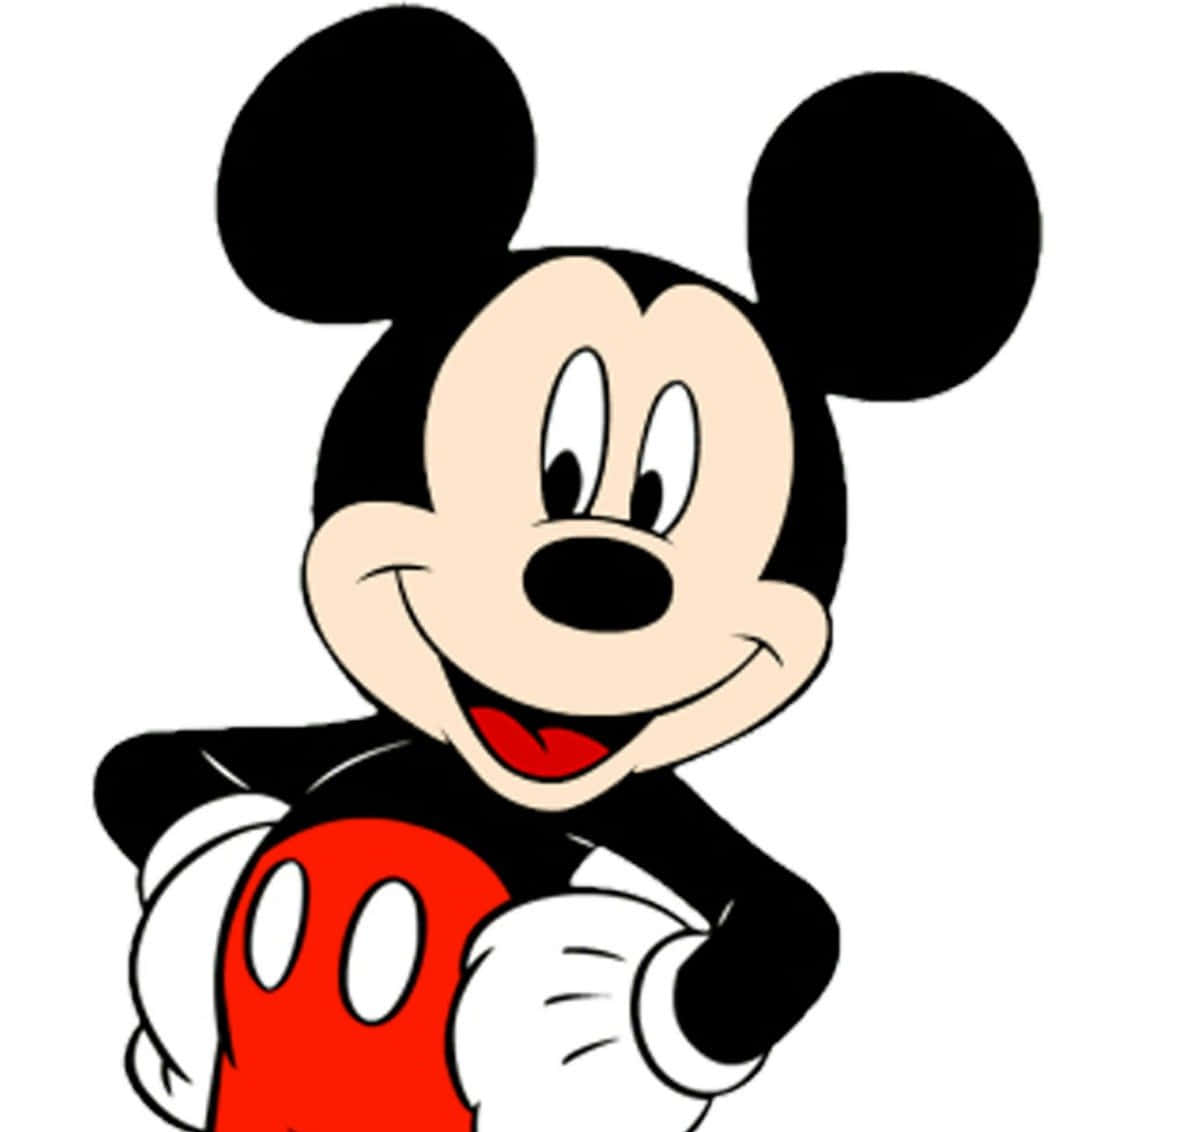 Slutdig Til Mickey Mouse For Klassisk Sjov!